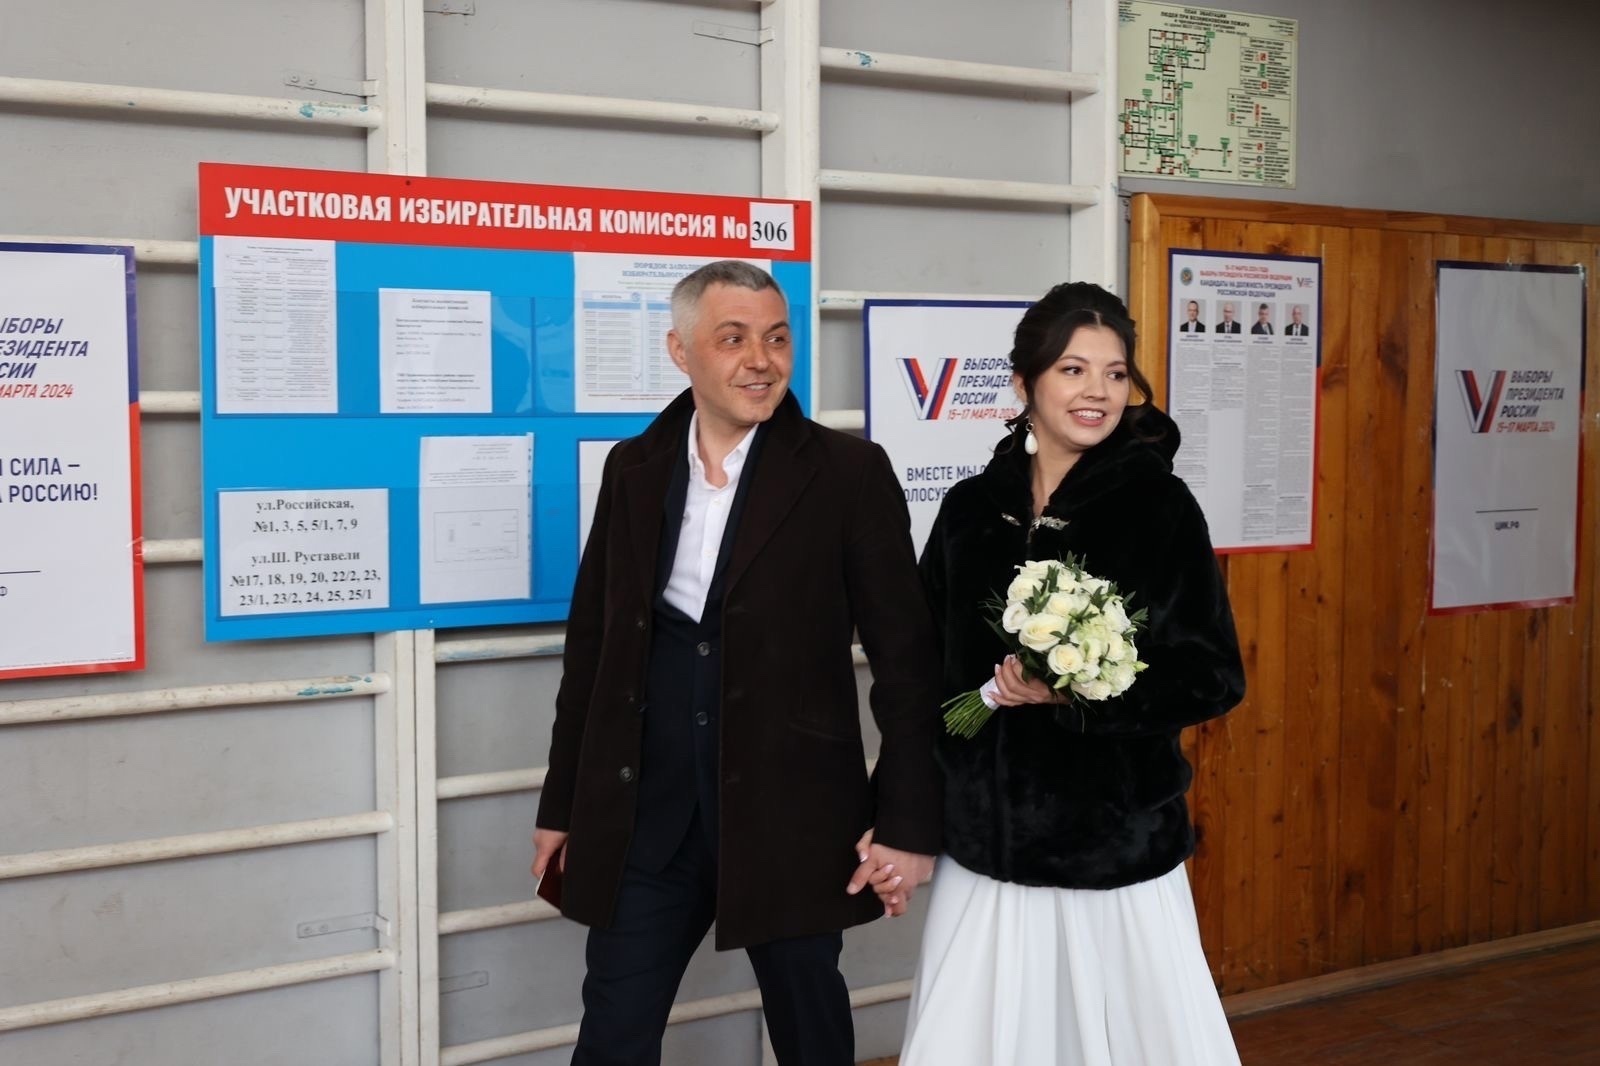 Даже столь знаменательный день — день свадьбы для молодоженов Руслана и Ларисы Ганеевых не стал поводом отменить посещение участковой избирательной комиссии №306